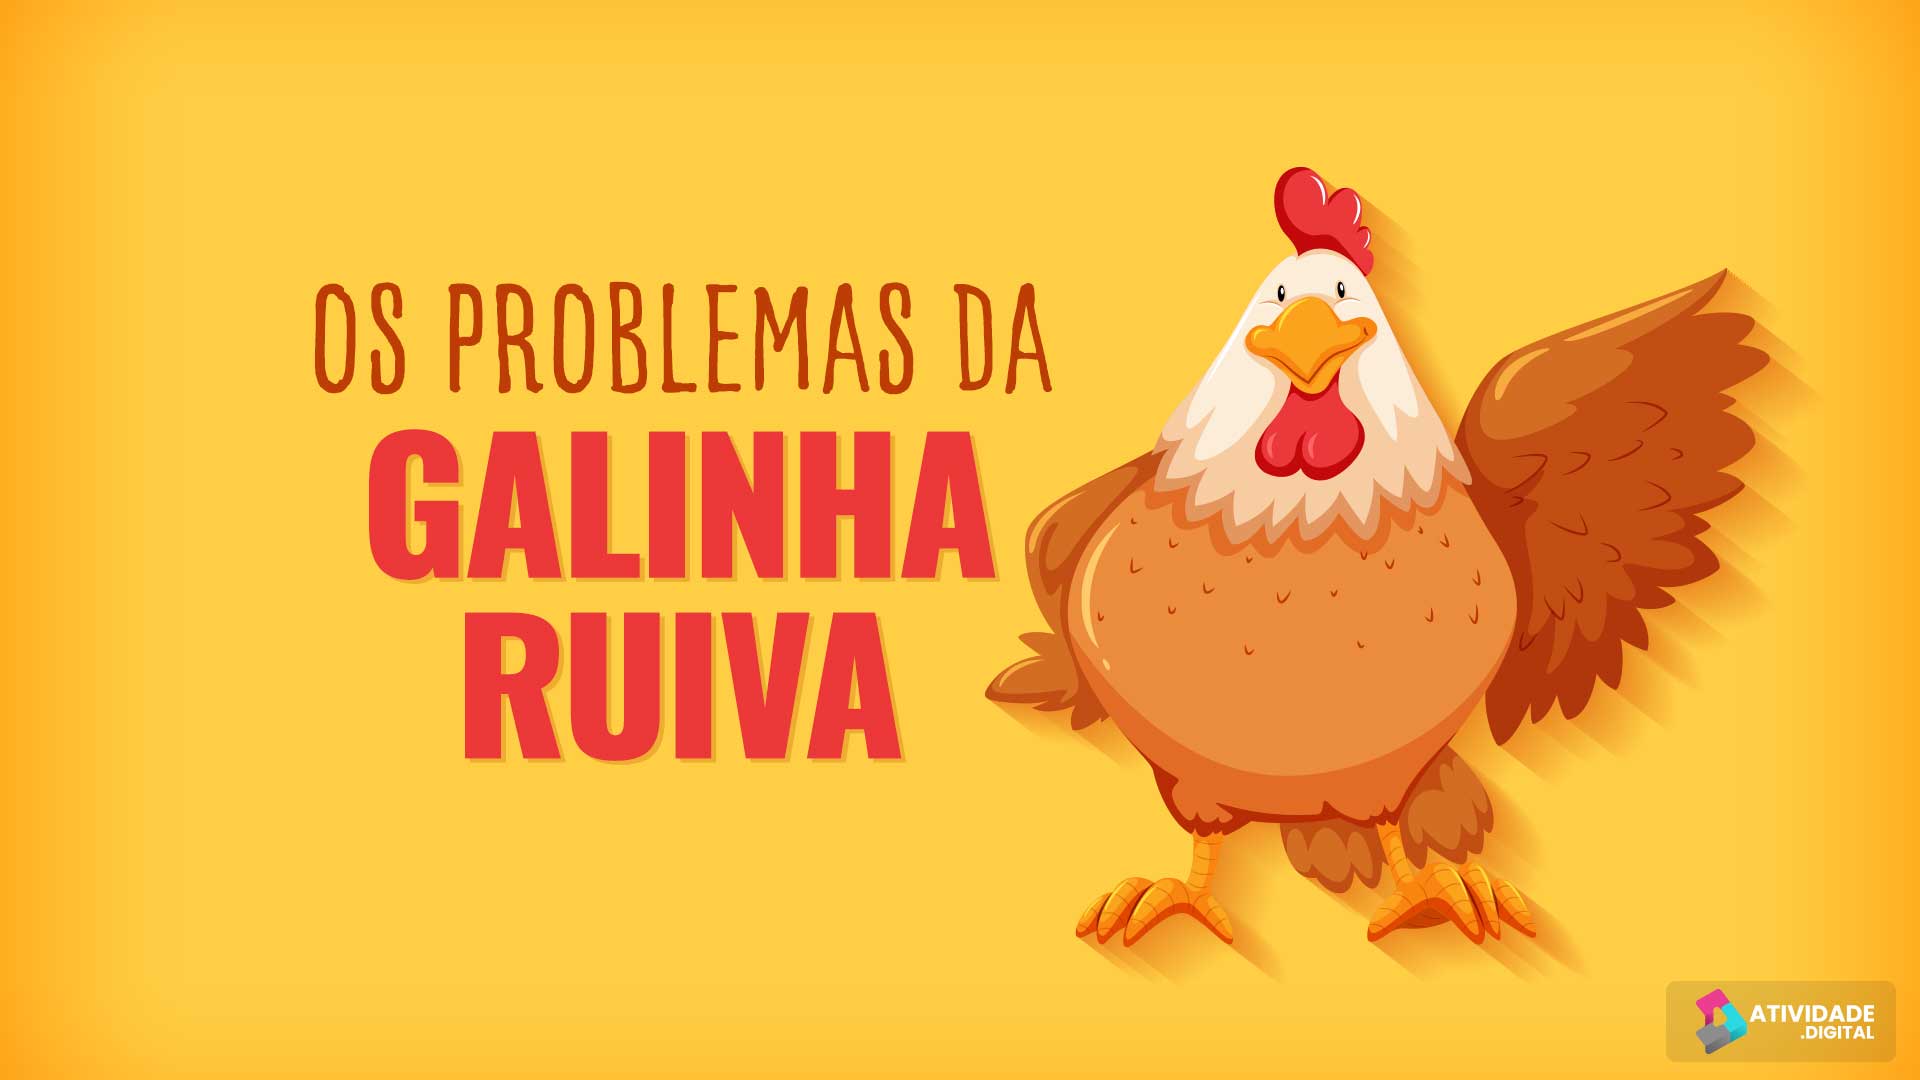 OS PROBLEMAS DA GALINHA RUIVA